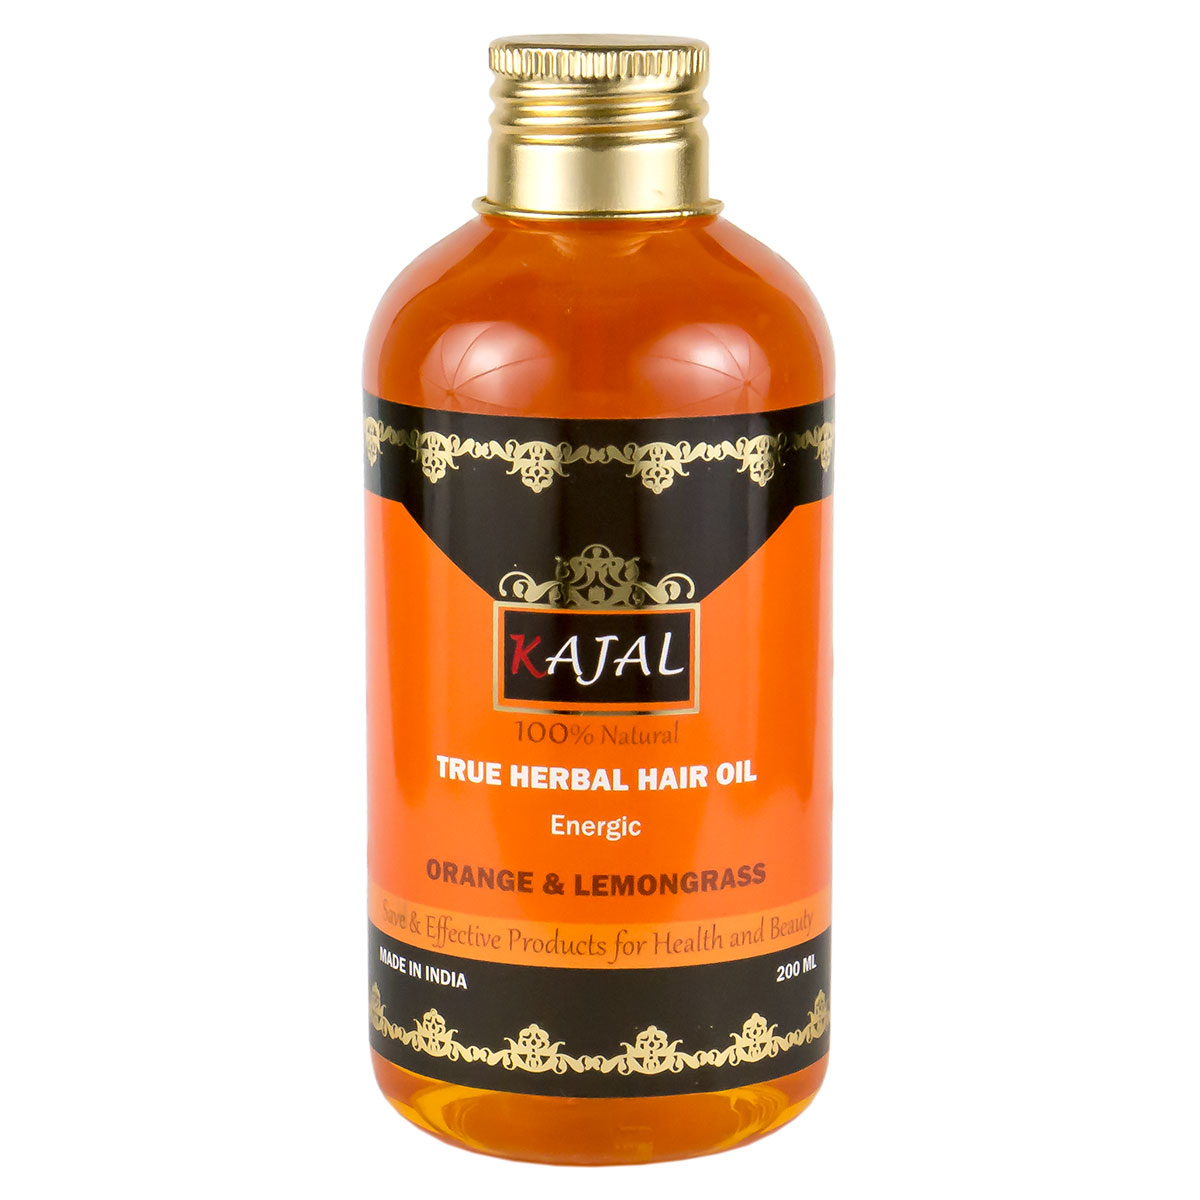 True Herbal Hair Oil  ORANGE & LEMONGRASS, Energic, Kajal (Травяное тонизирующее масло для волос АПЕЛЬСИН И ЛЕМОНГРАСС, Каджал), 200 мл. - СРОК ГОДНОСТИ ПО ДЕКАБРЬ 2023 ГОДА